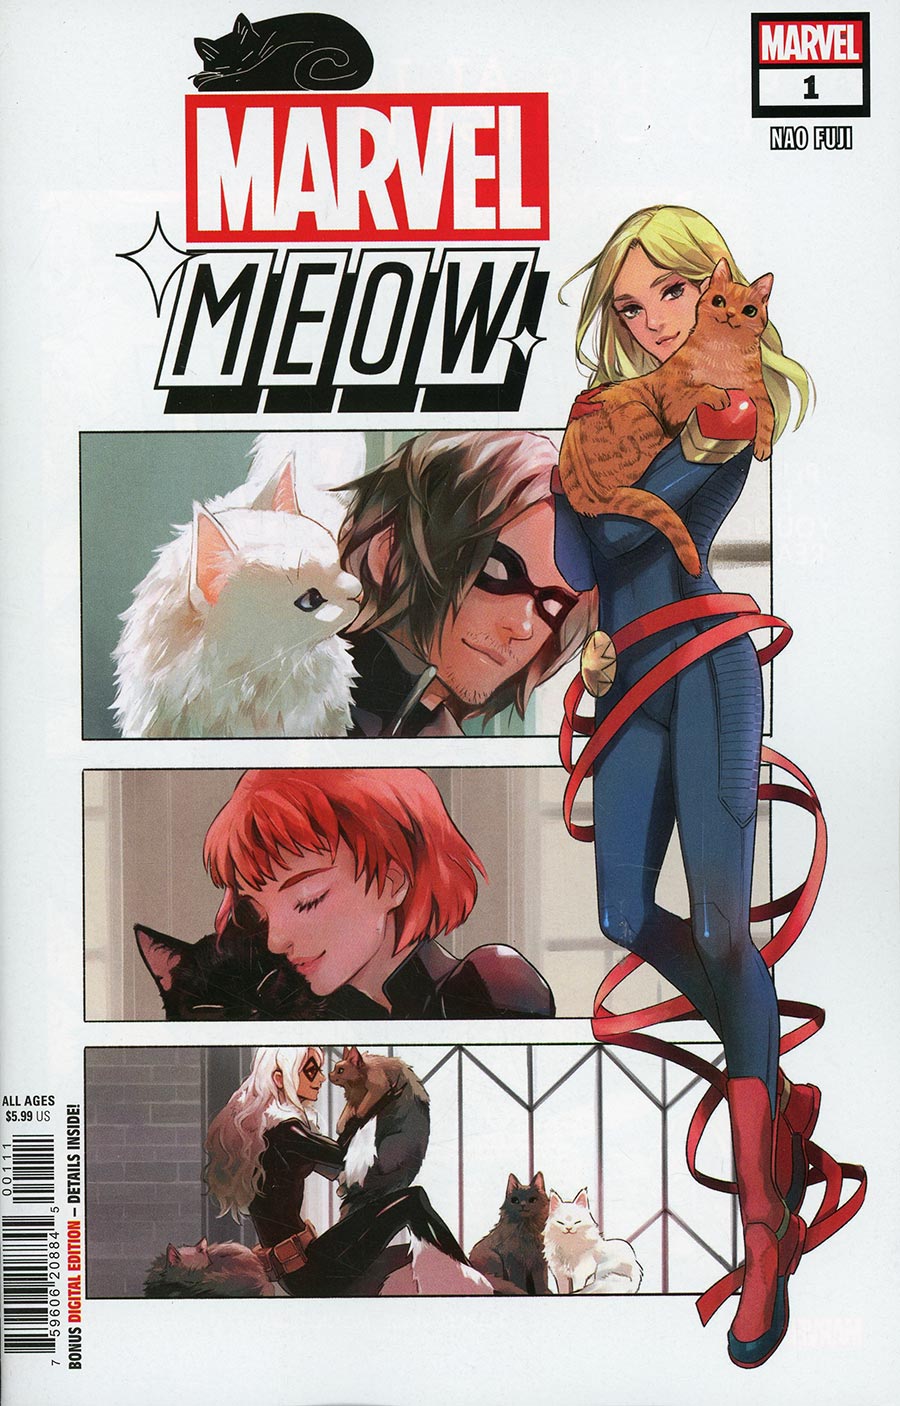 Marvel Meow #1 (One Shot) Cover A Regular Nao Fuji Cover